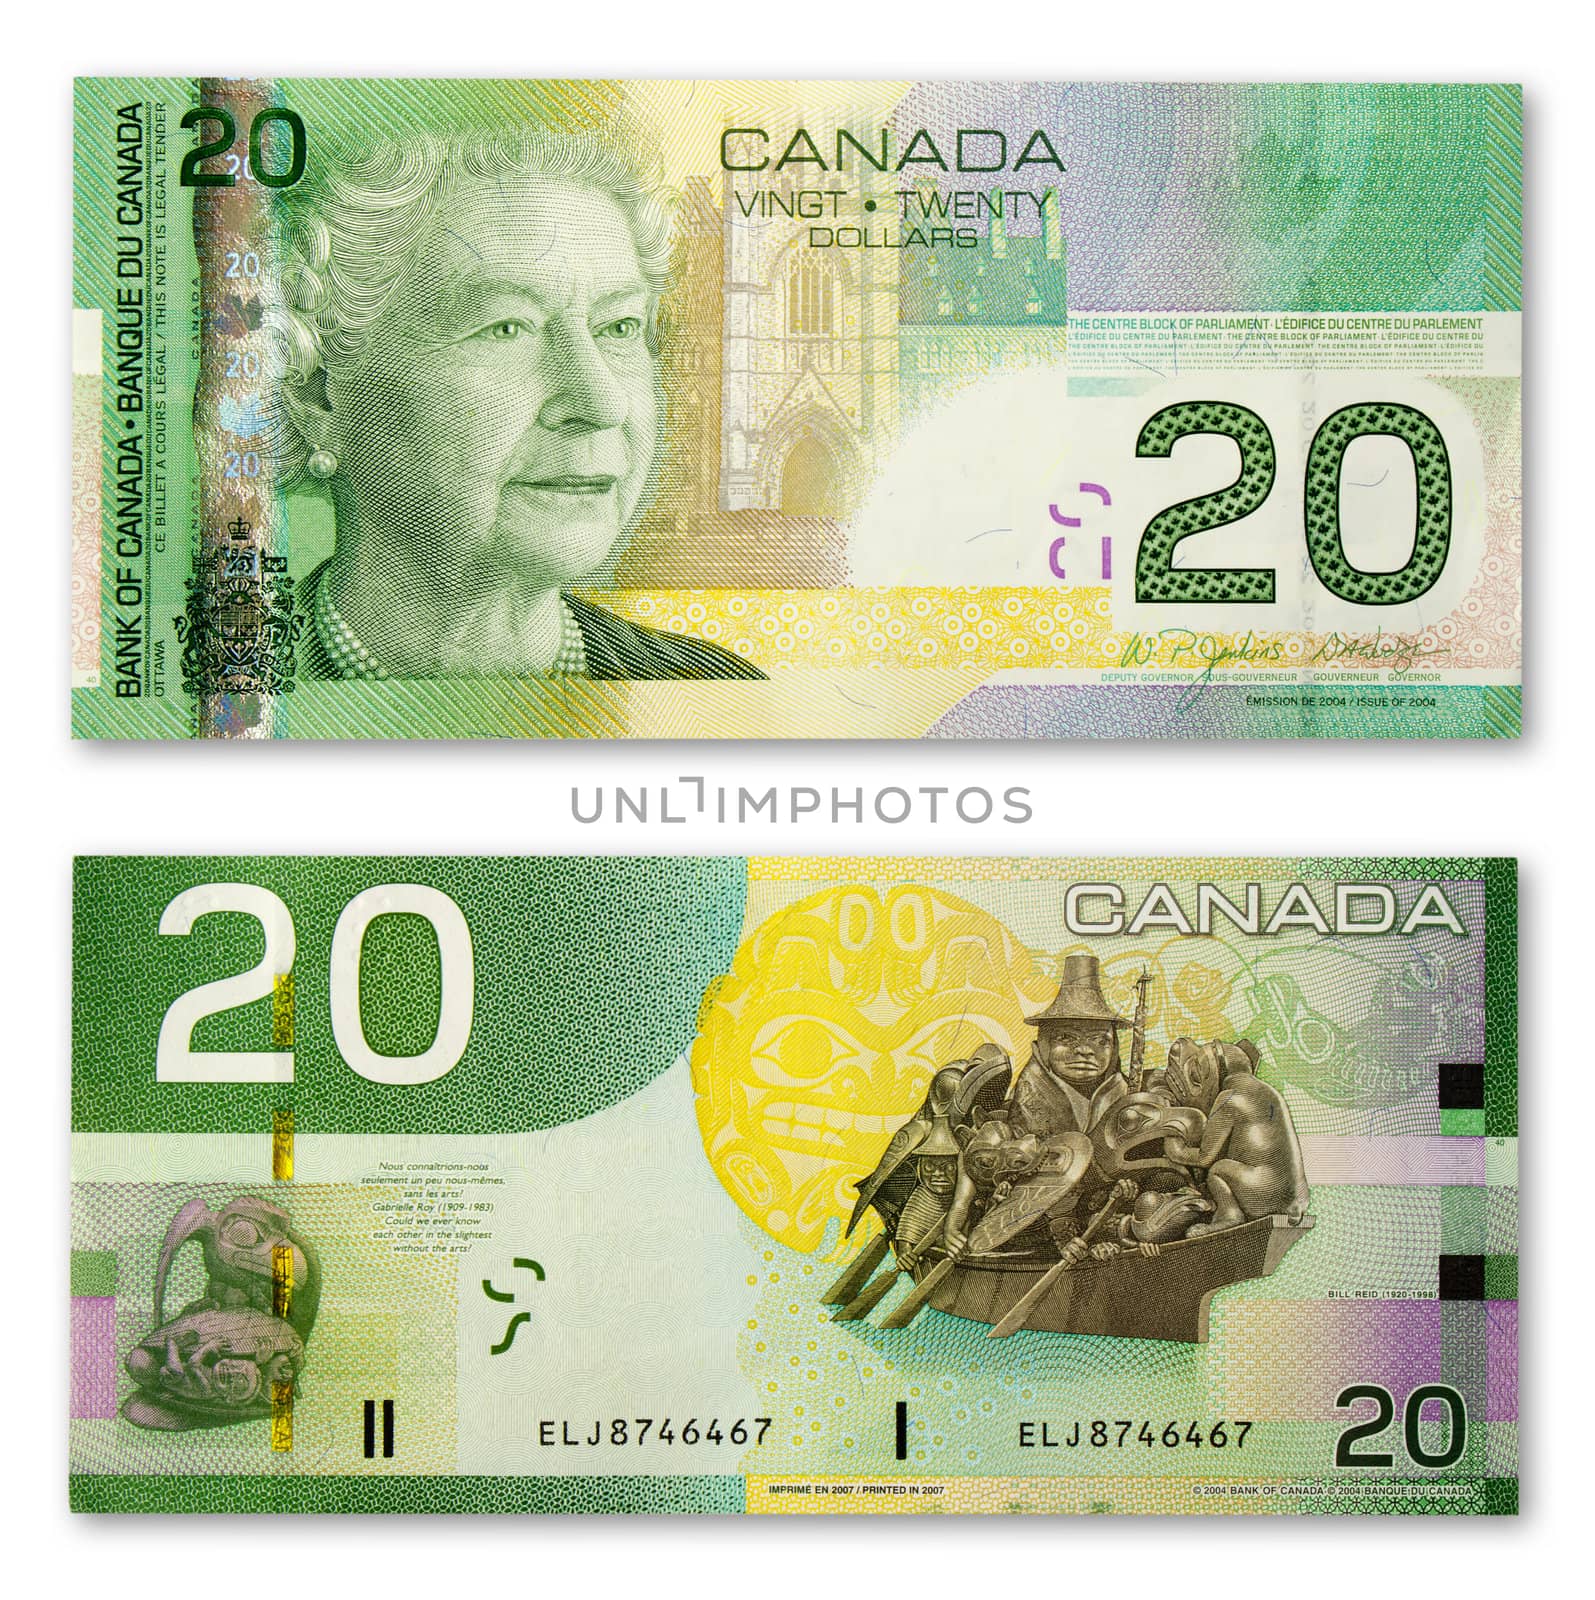 Canadian money $40 in $20 bills.